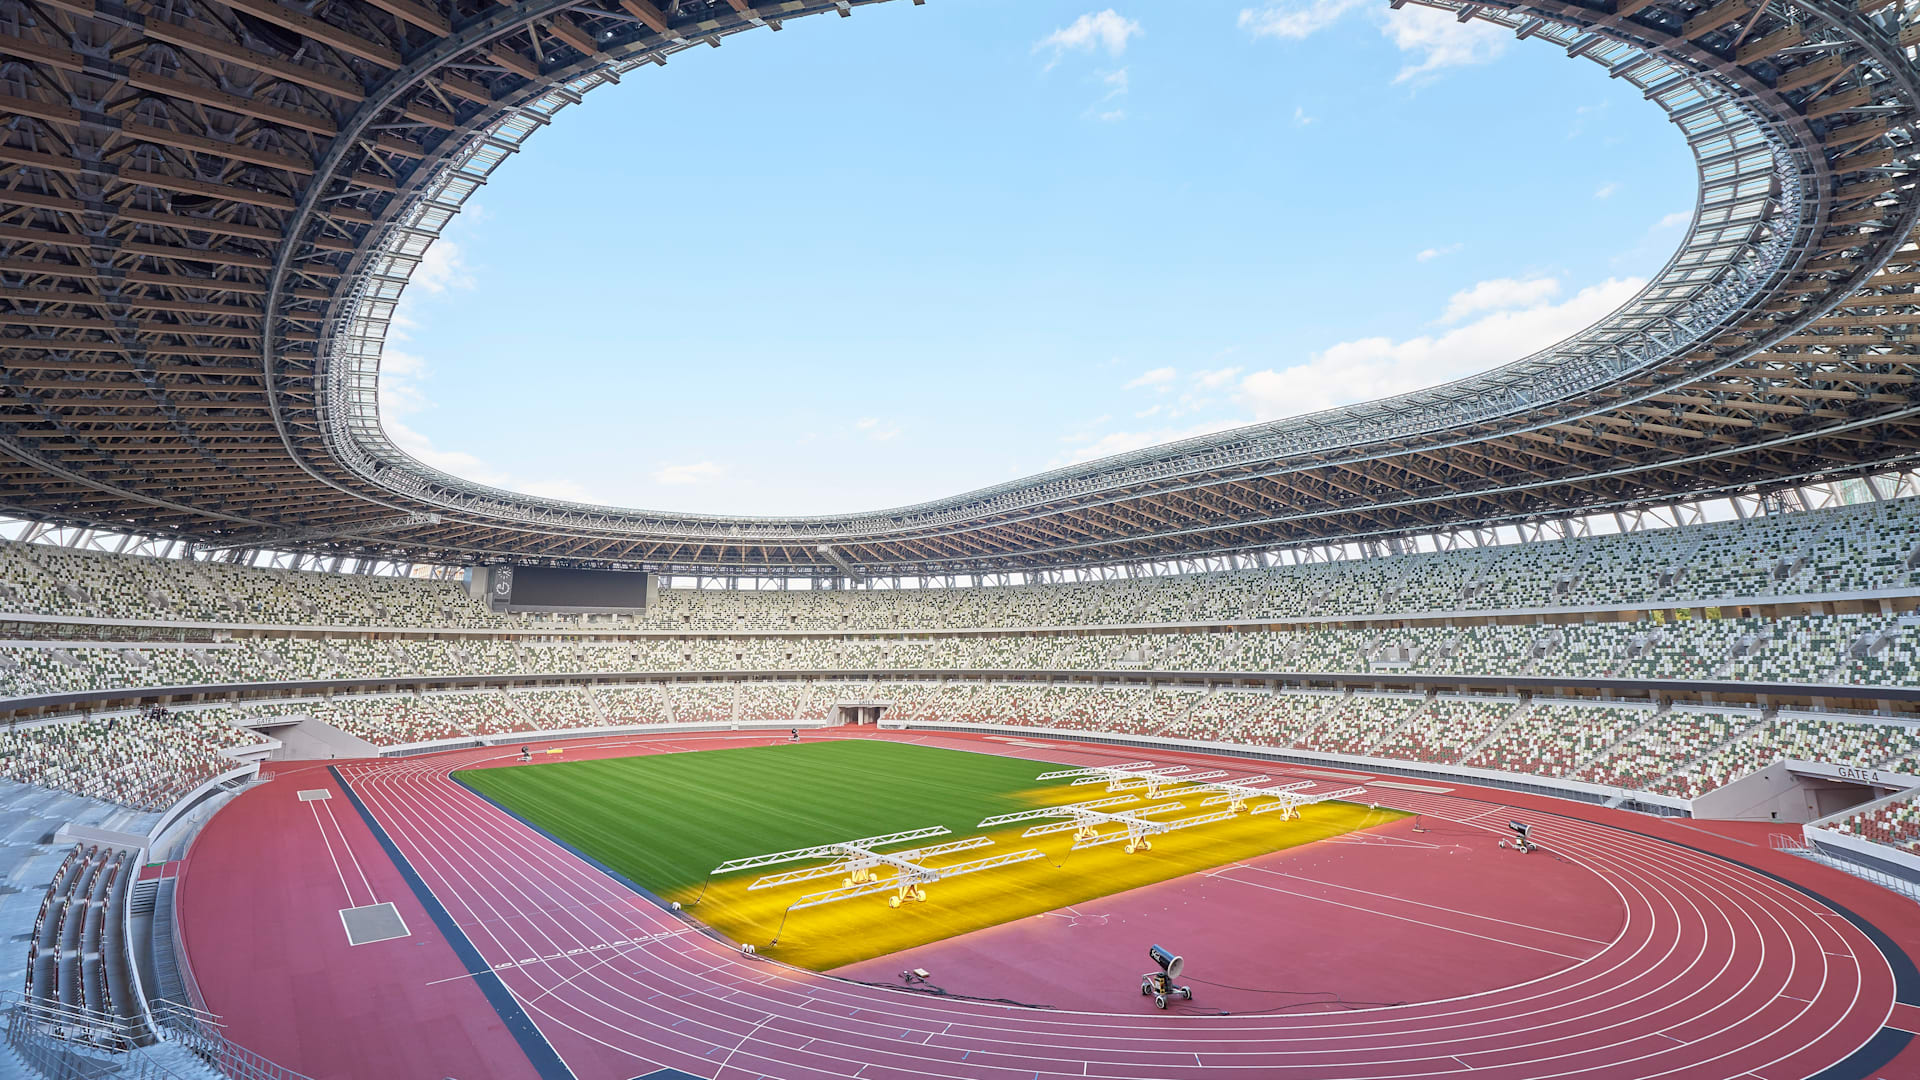 東京2020大会の開閉会式が行われる新国立競技場が完成 12月21日にお披露目イベント